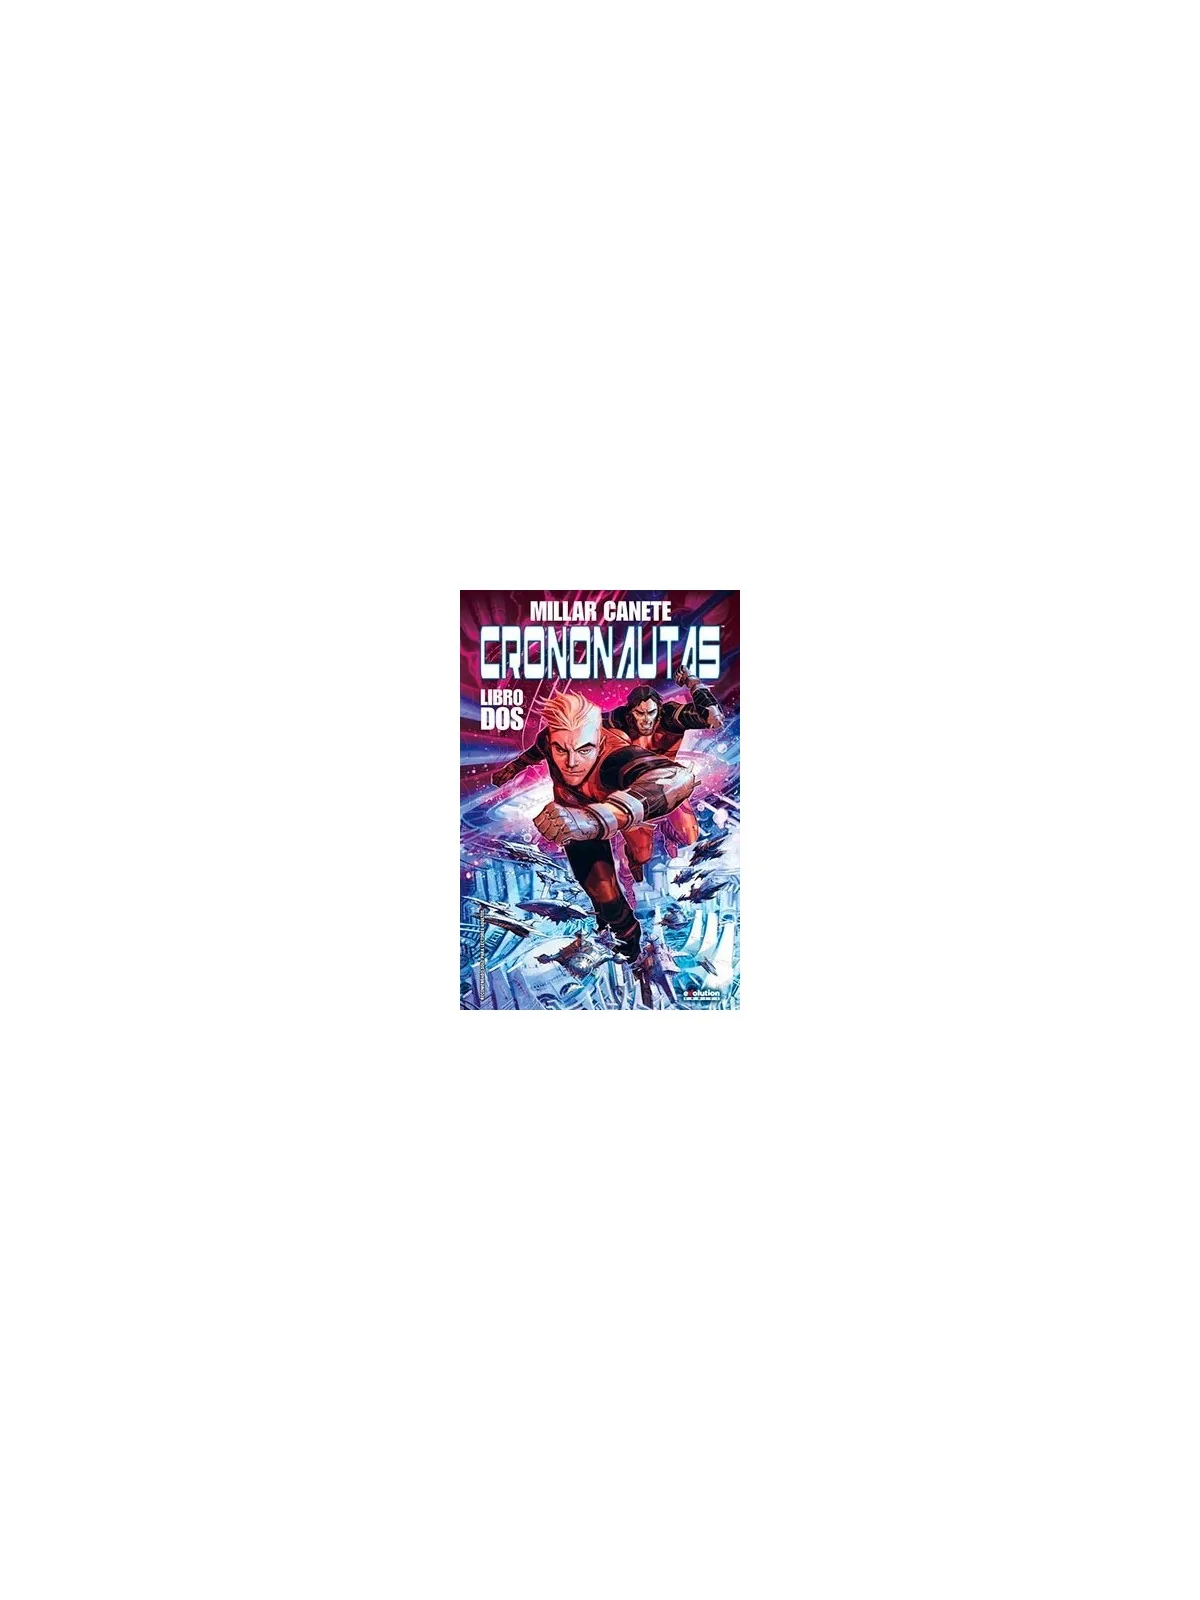 Comprar Crononautas 02 barato al mejor precio 15,20 € de Panini Comics